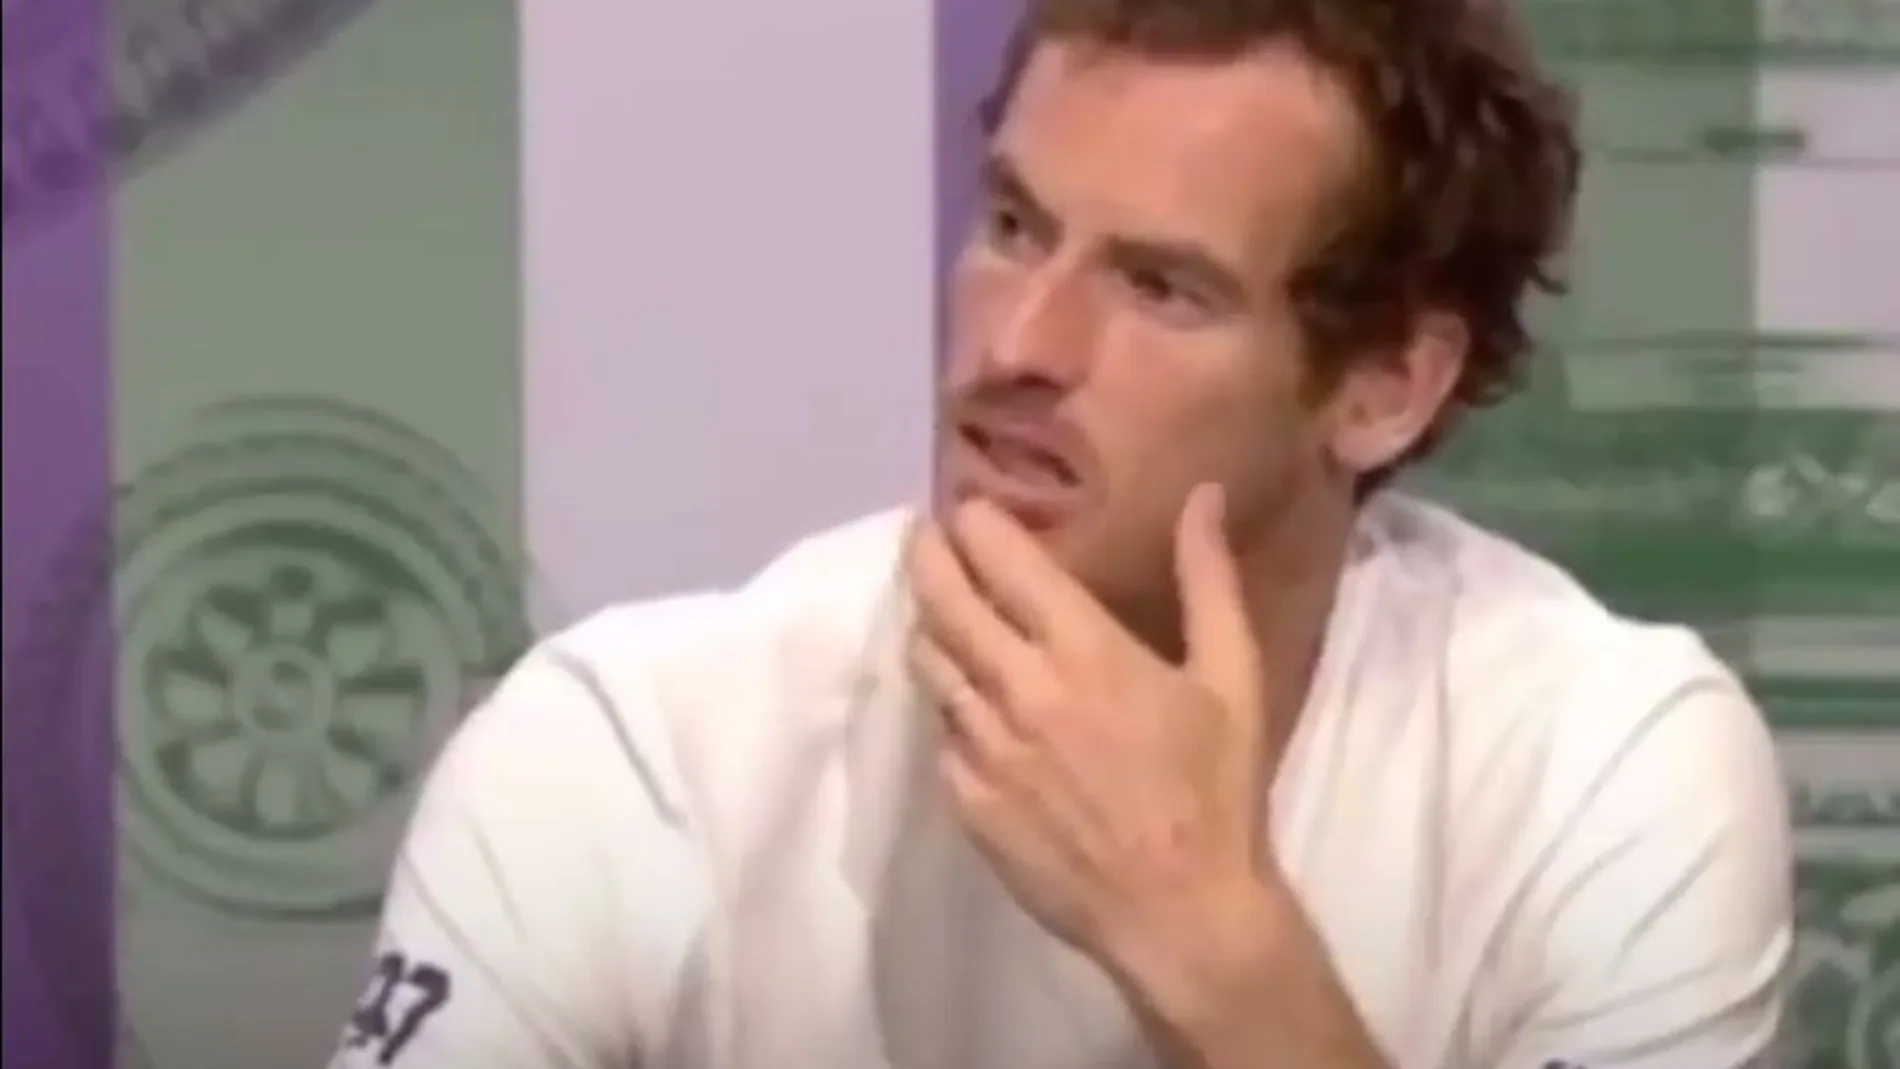 Andy Murray durante la entrevista que corrigió al periodista